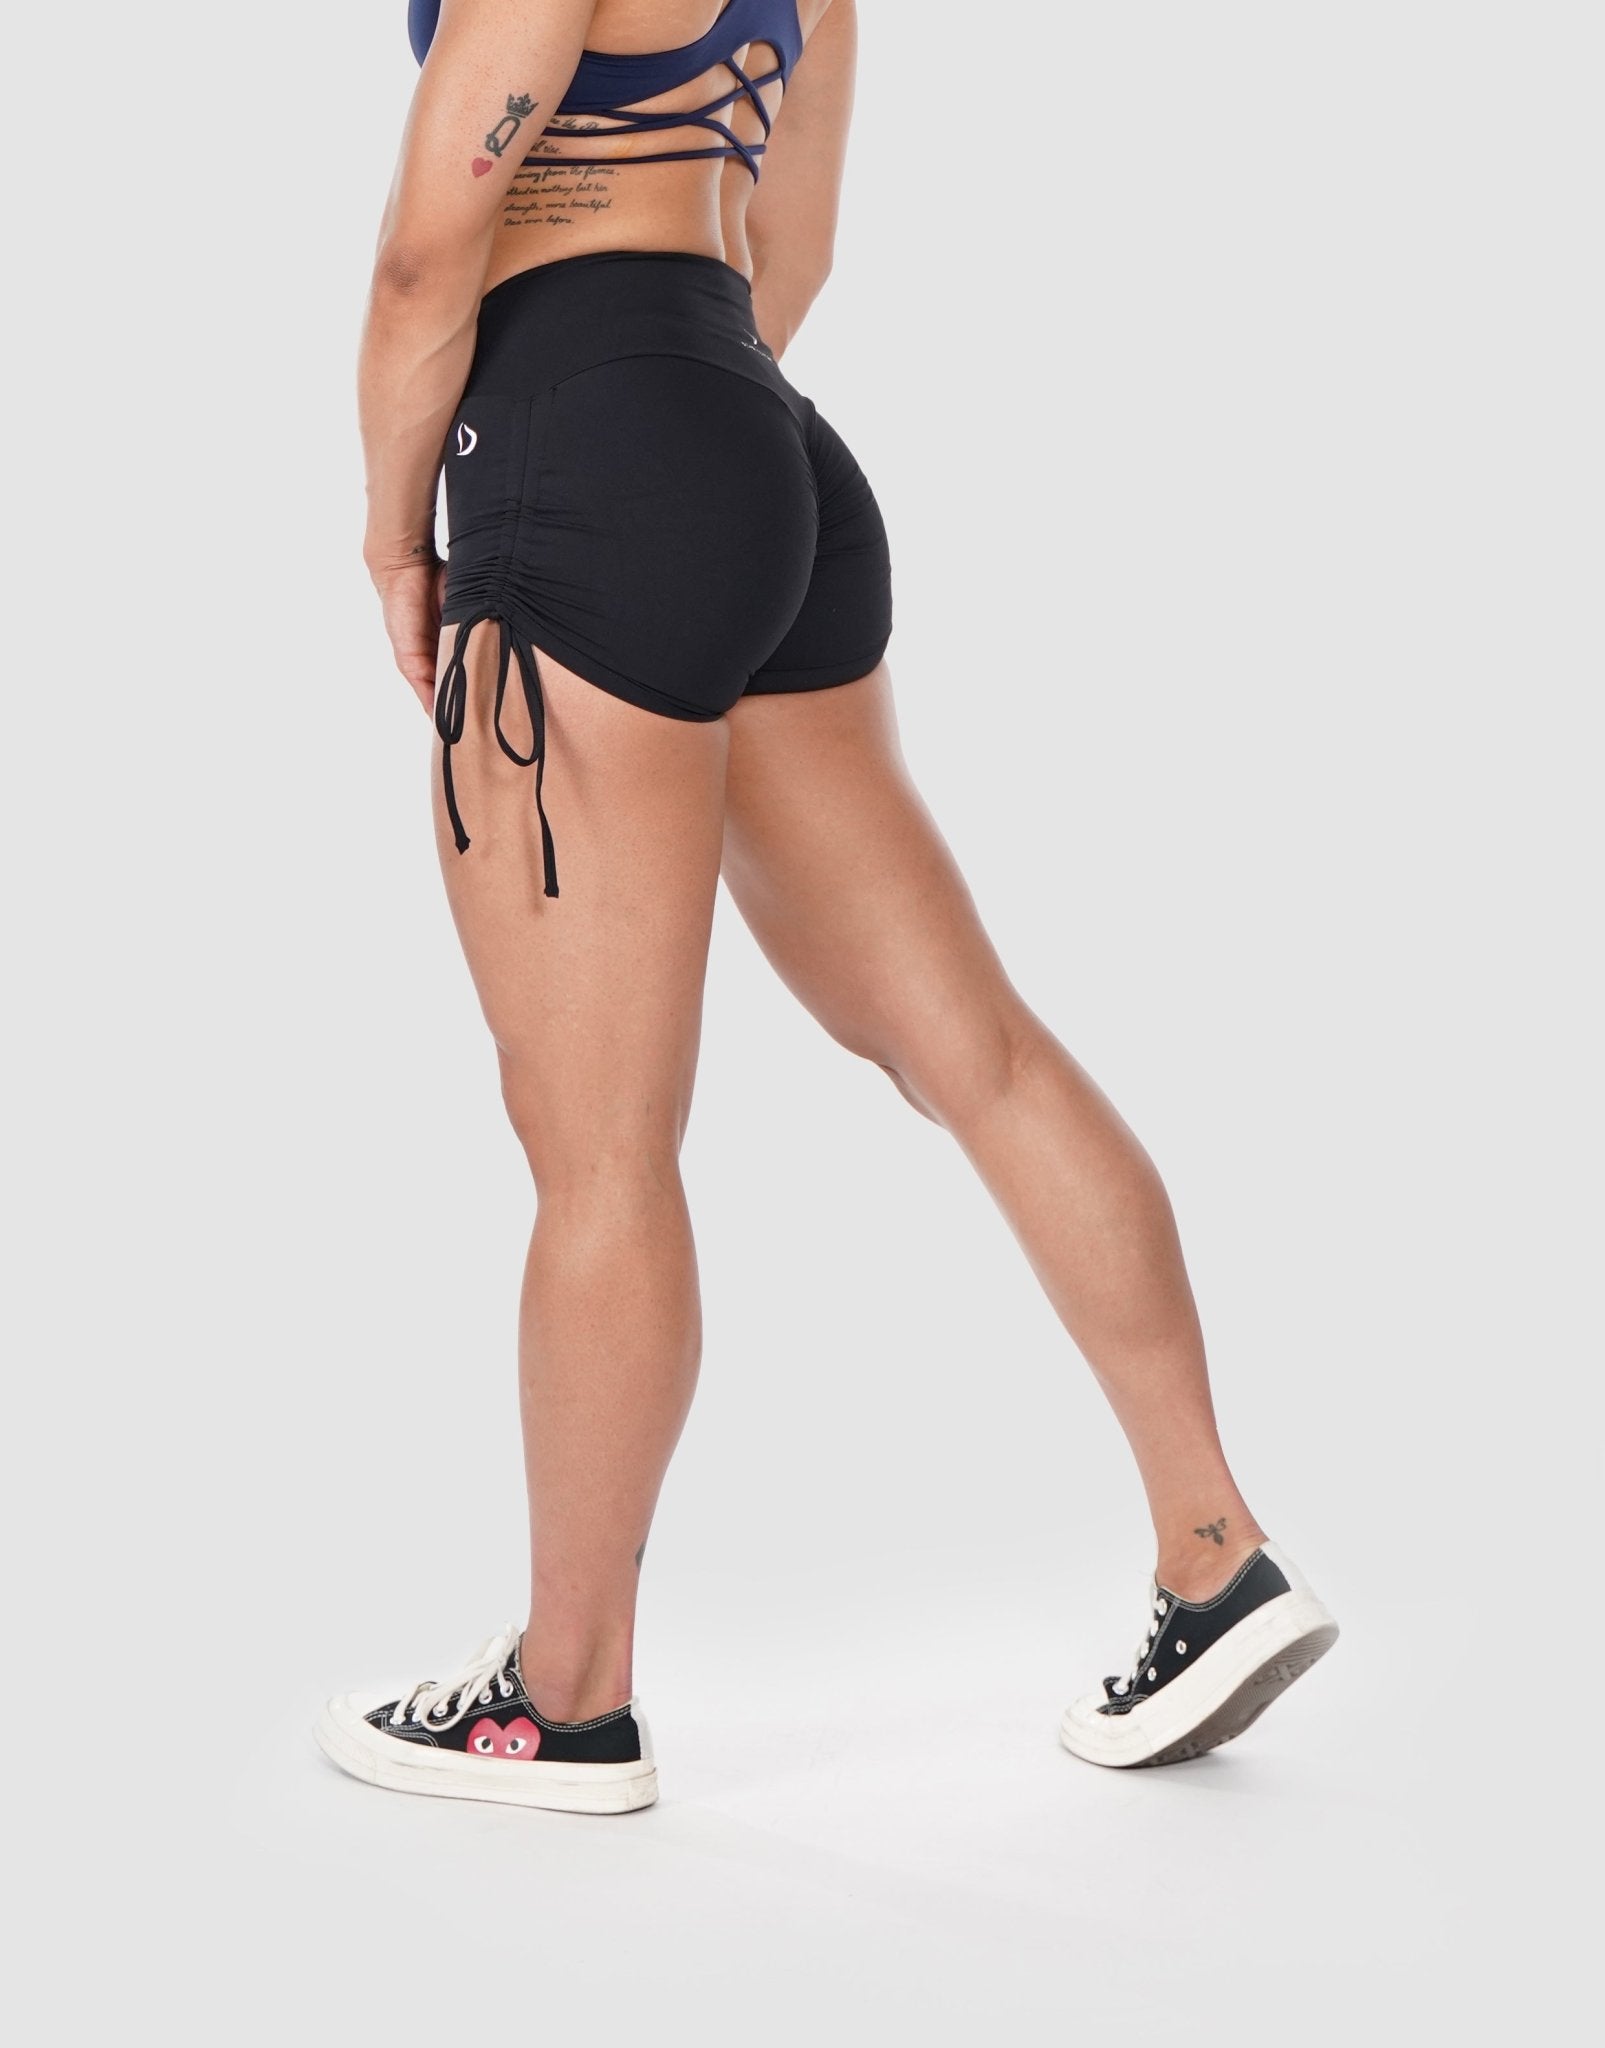 Scrunch Butt High Waist Shorts Booty Short Women Legging, 48% OFF